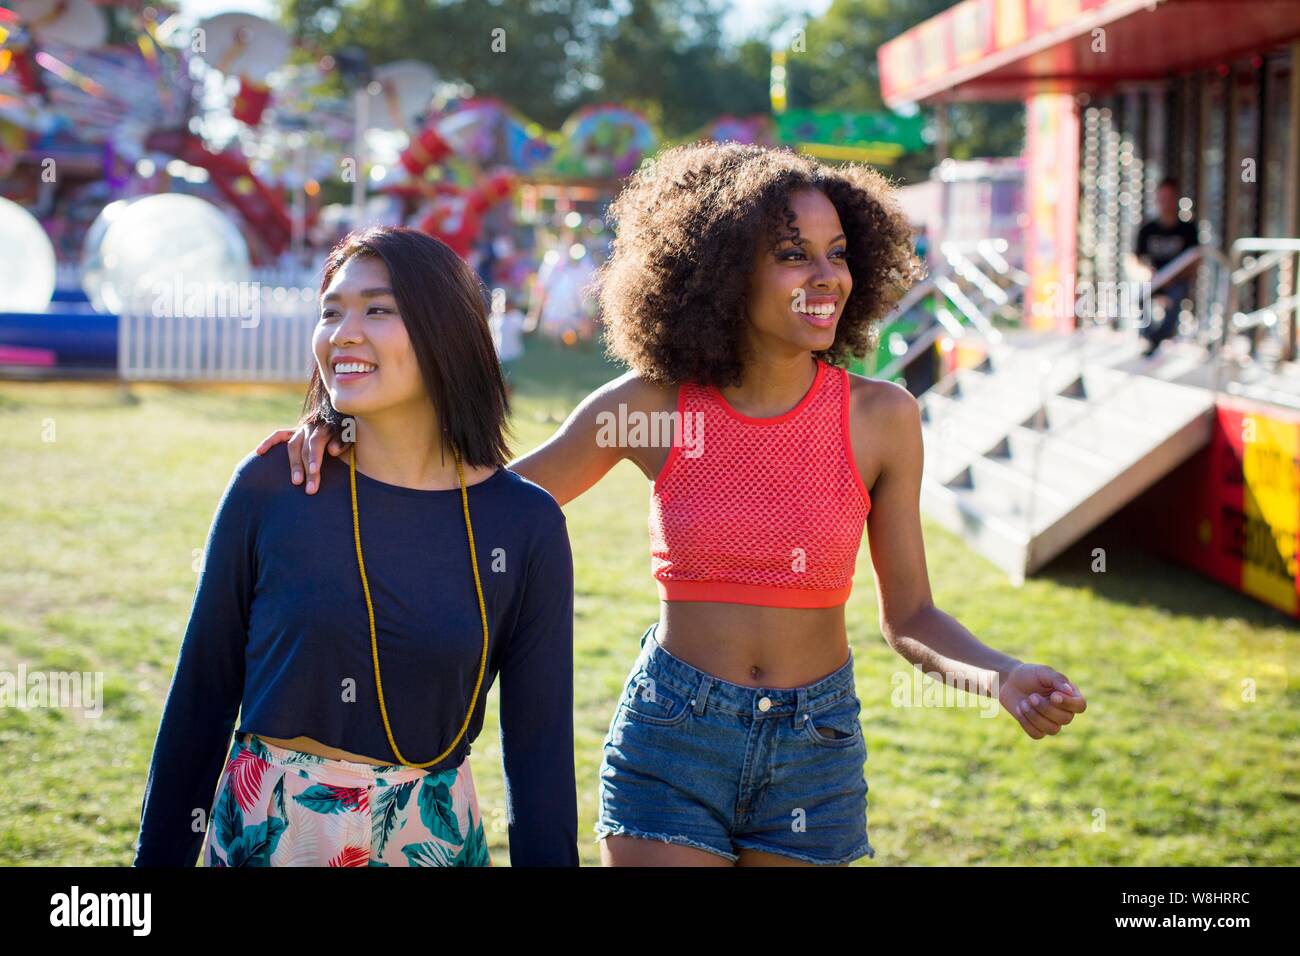 Dos mujeres jóvenes en la feria. Foto de stock